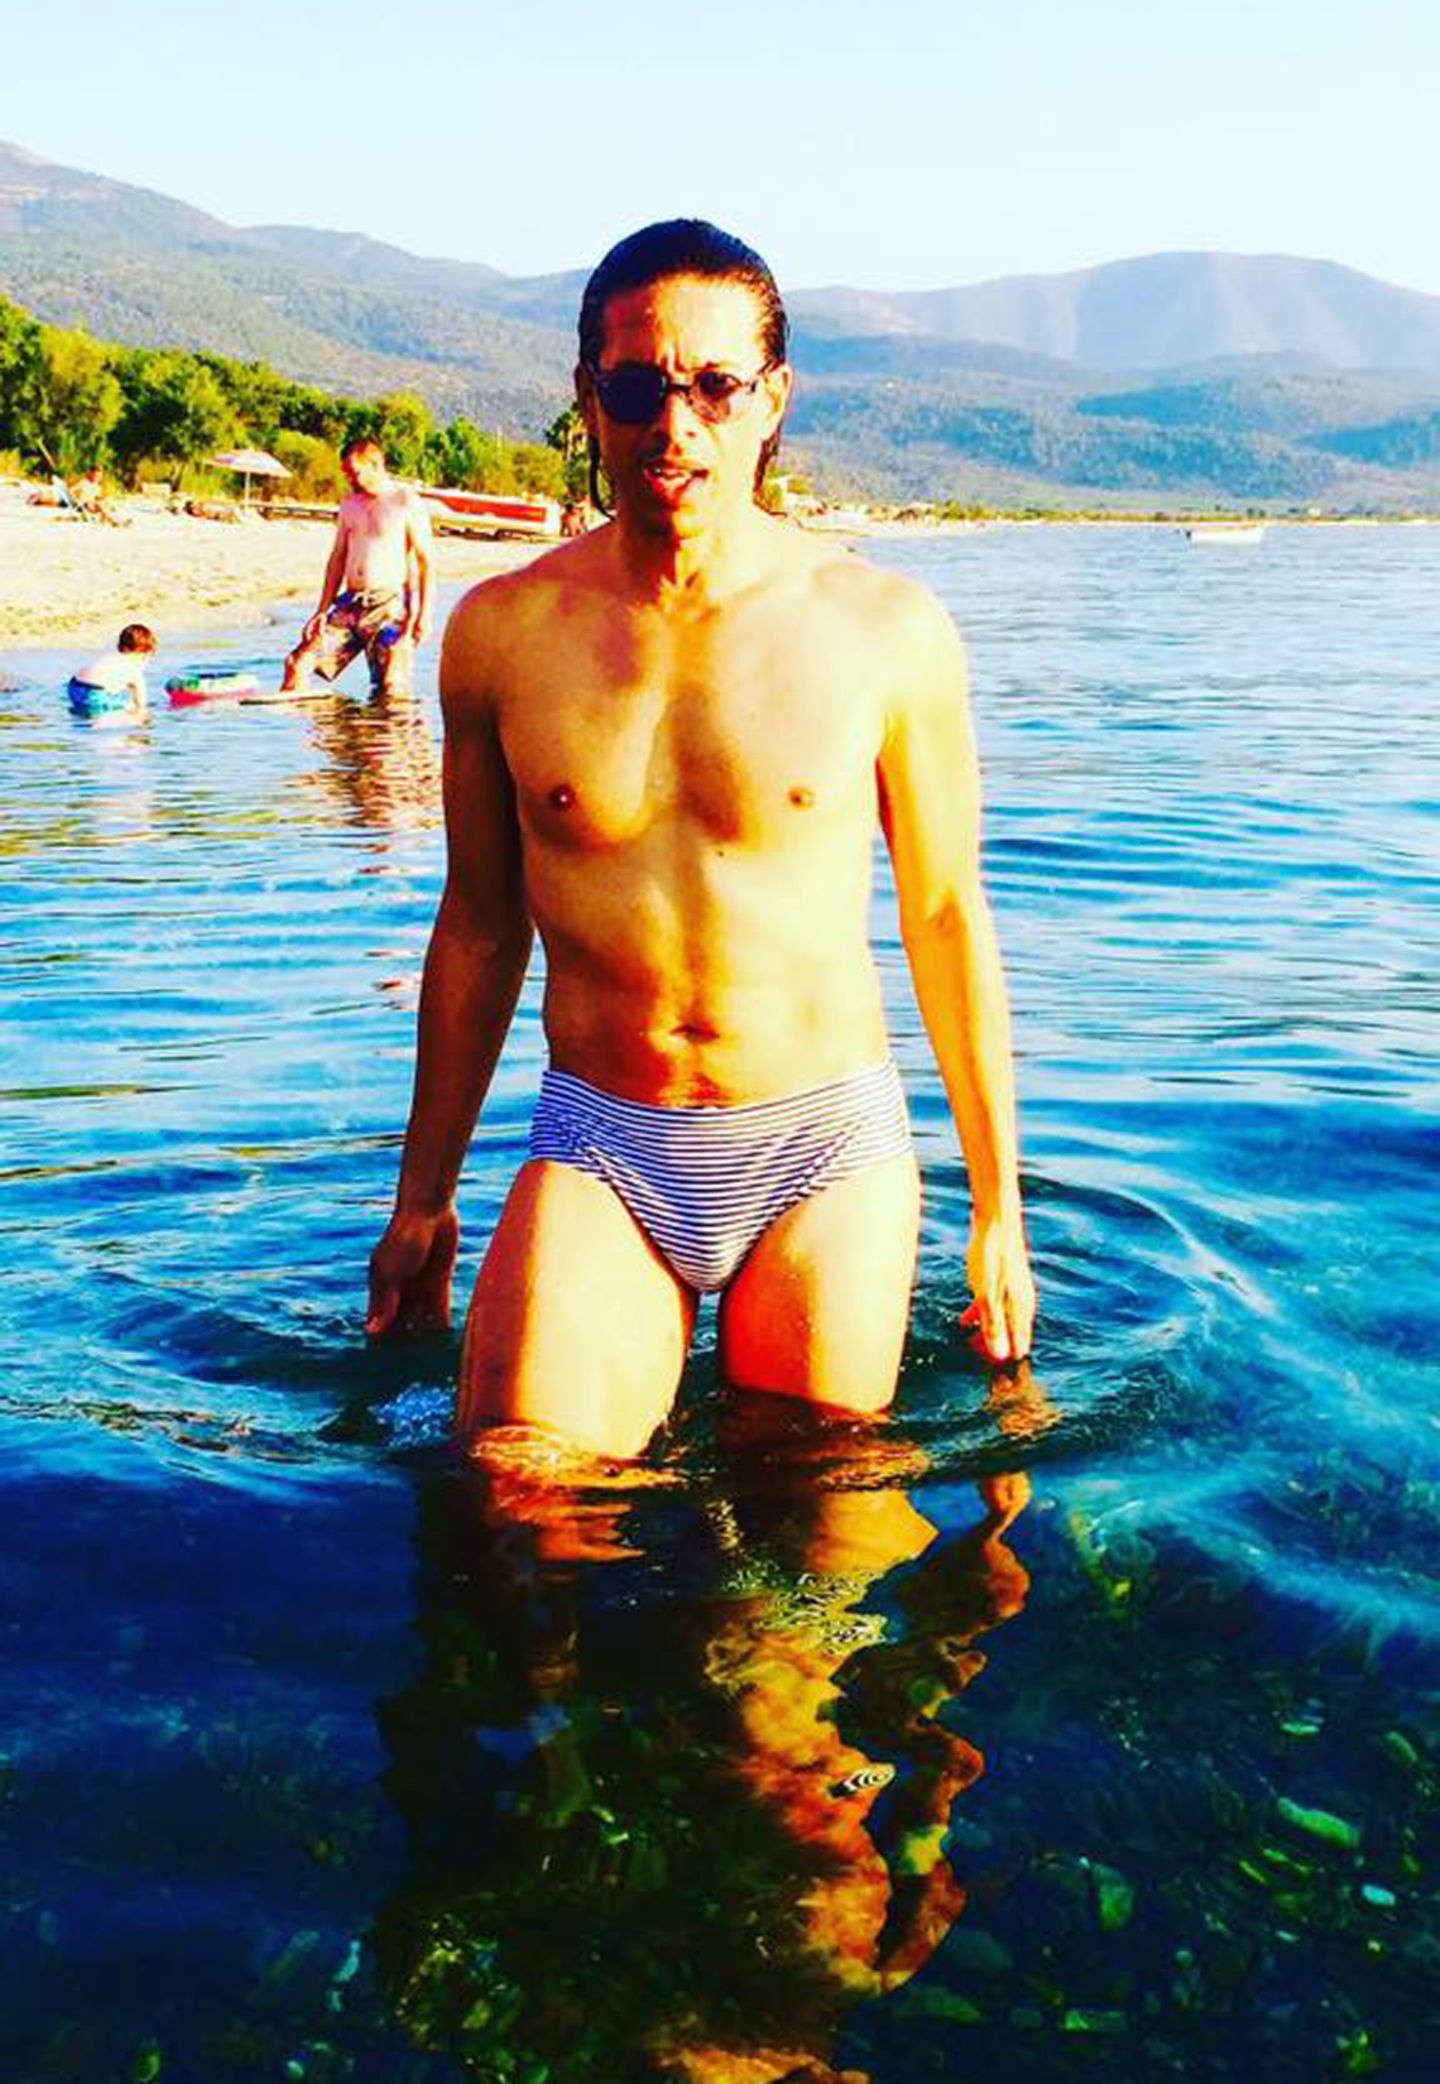 Heißes Badehöschen, Jorge! Der Choregraf urlaubt derzeit auf der Insel Thassos und genießt die griechische Sonne.